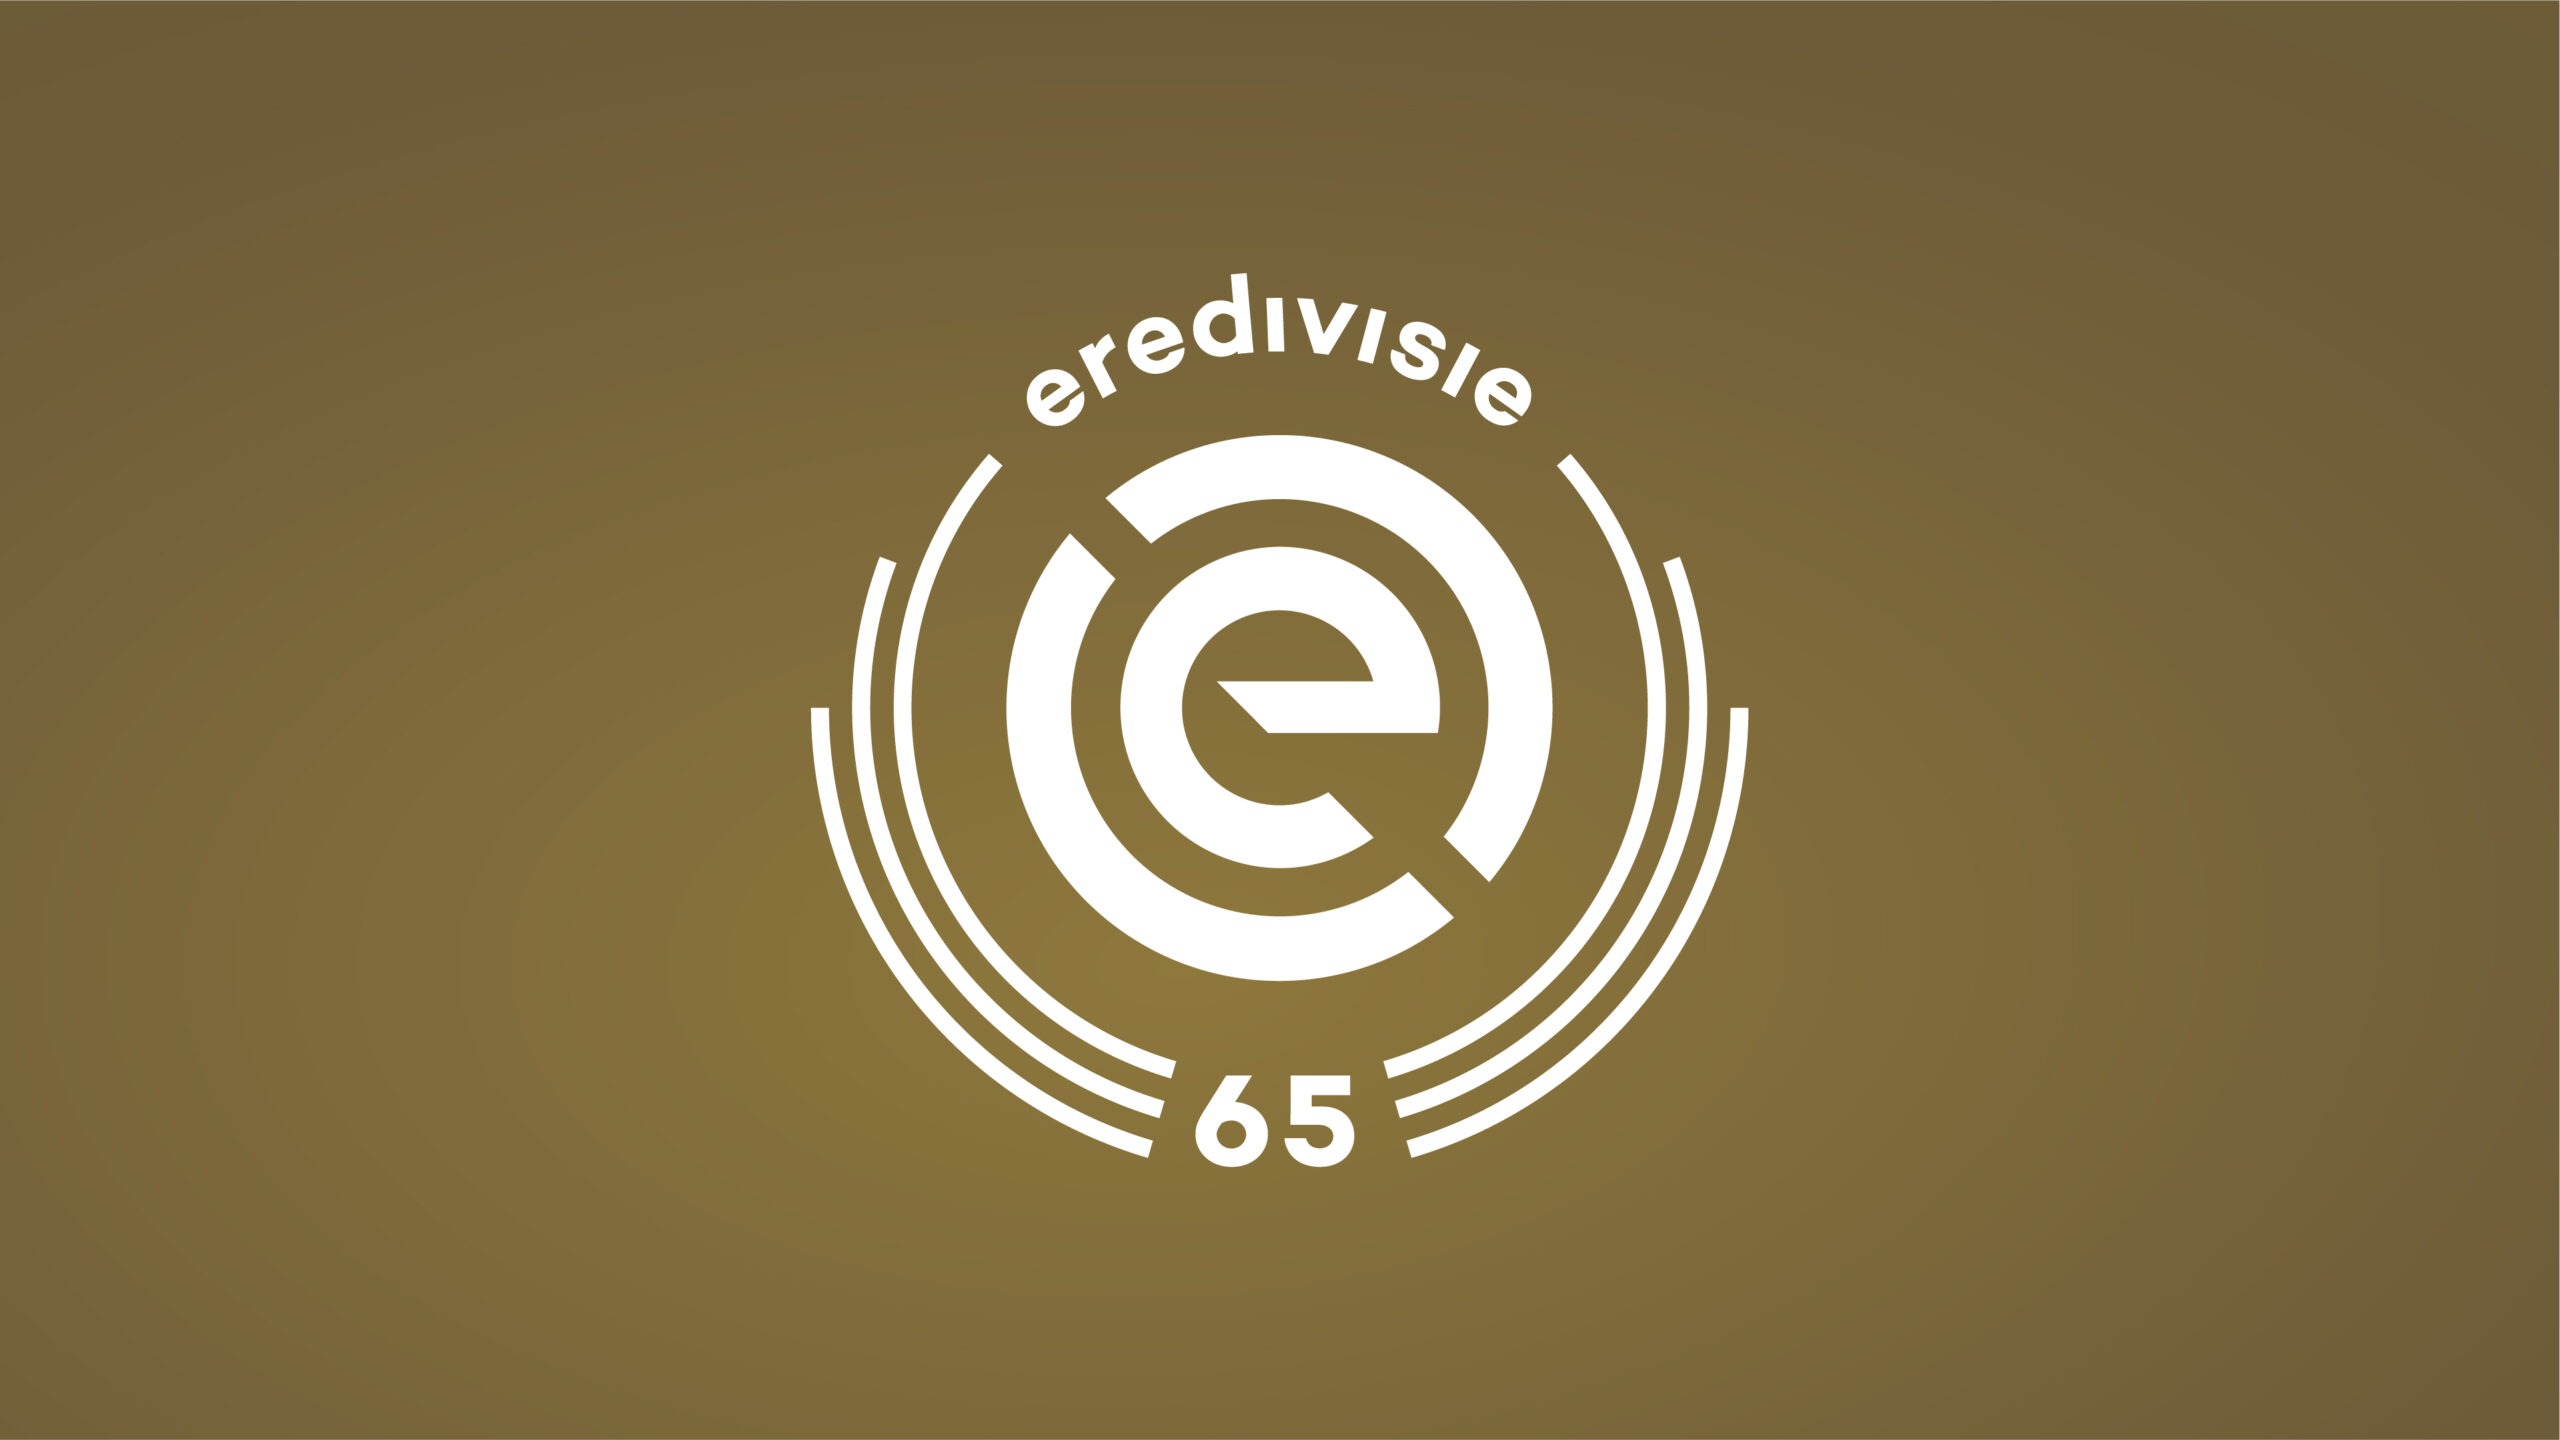 Eredivisie 65